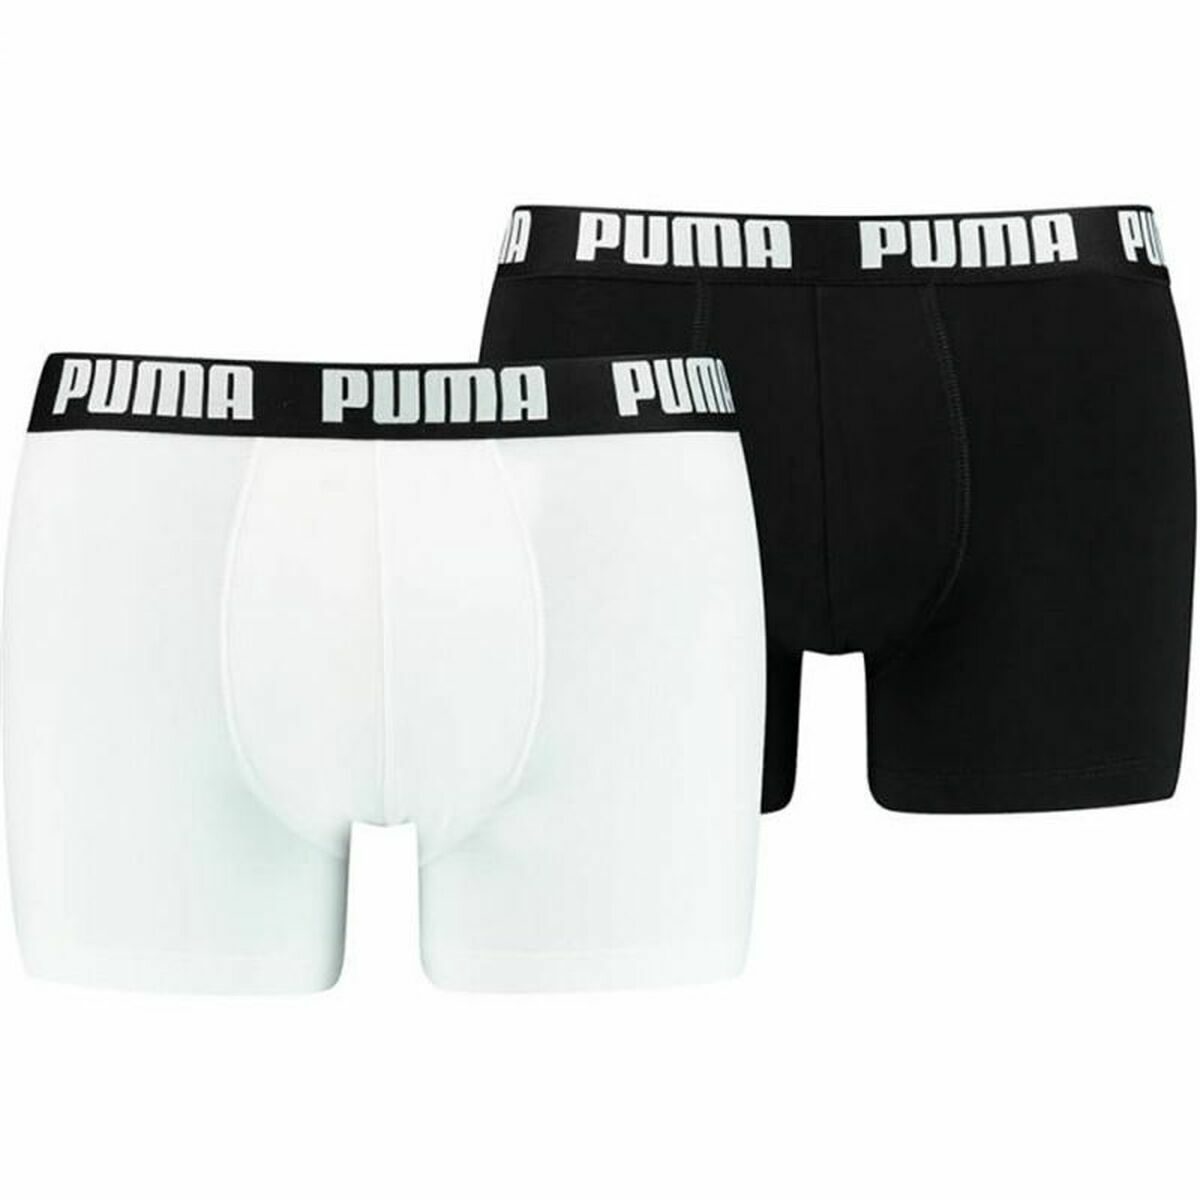 Miesten bokserit Puma Basic Musta Valkoinen, Koko M